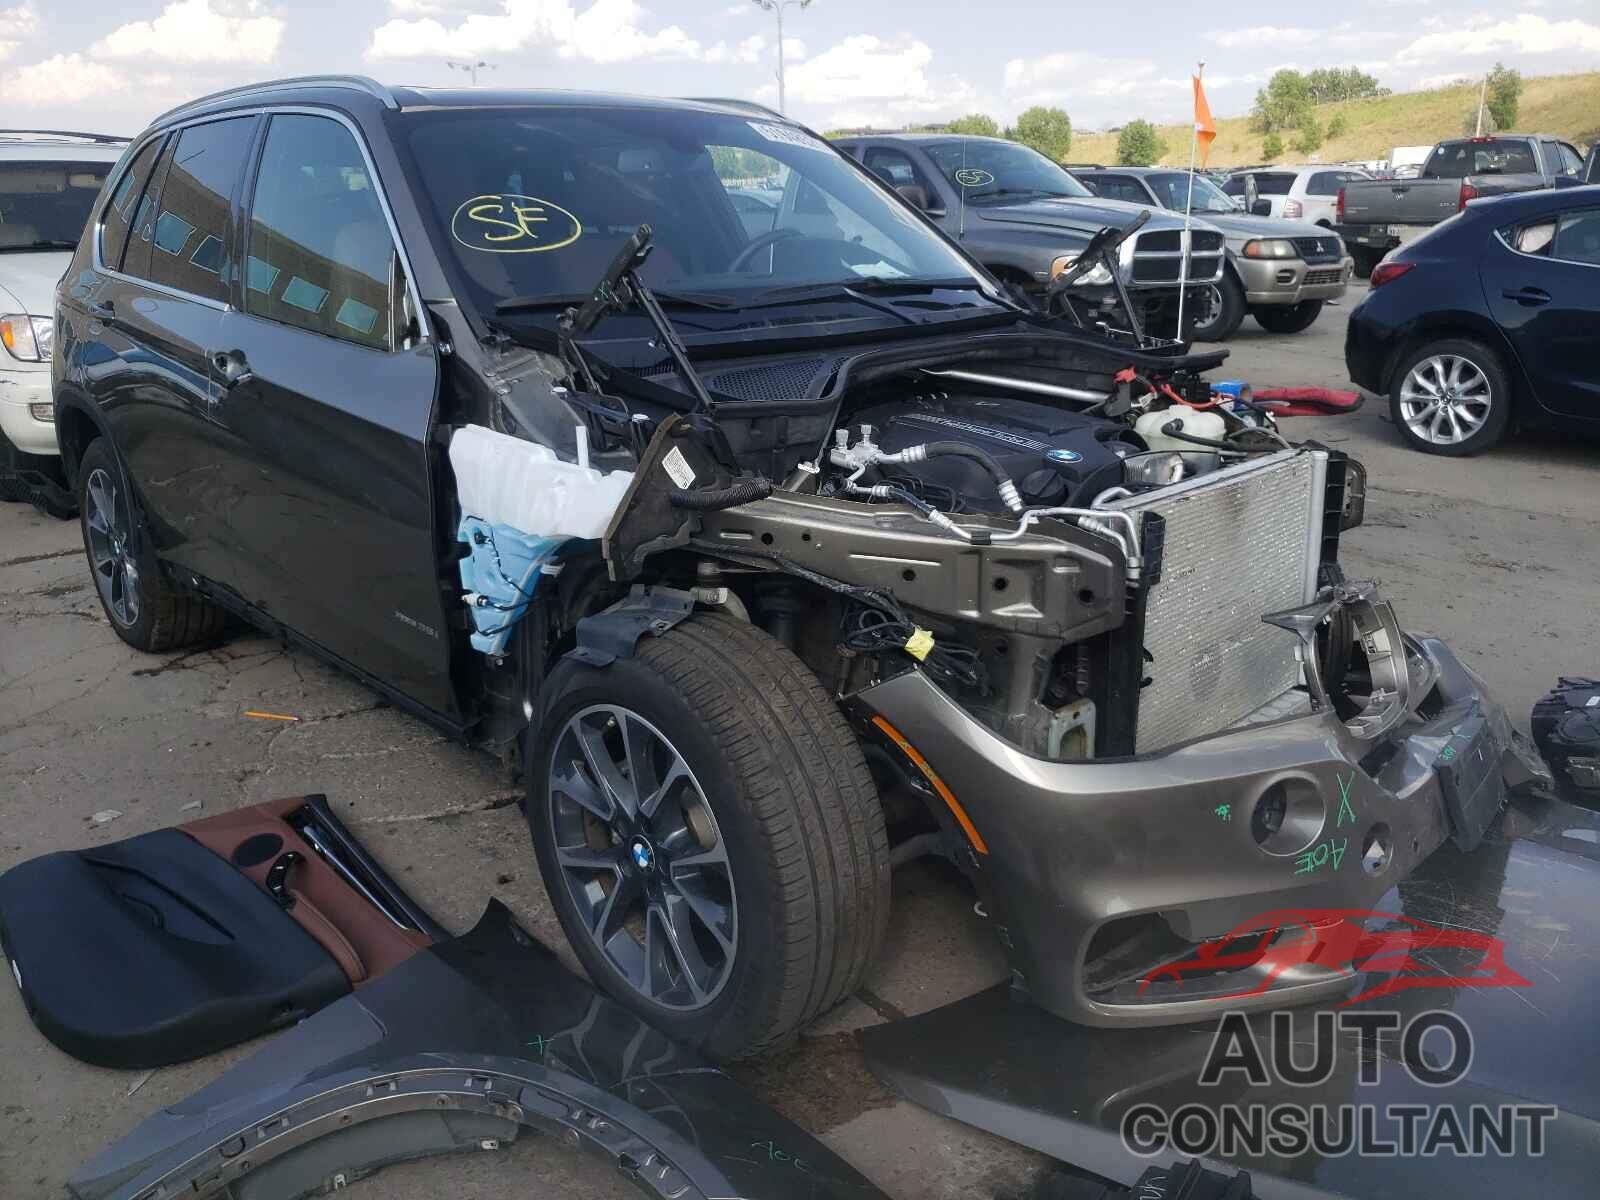 BMW X5 2018 - 5UXKR0C56J0X95206